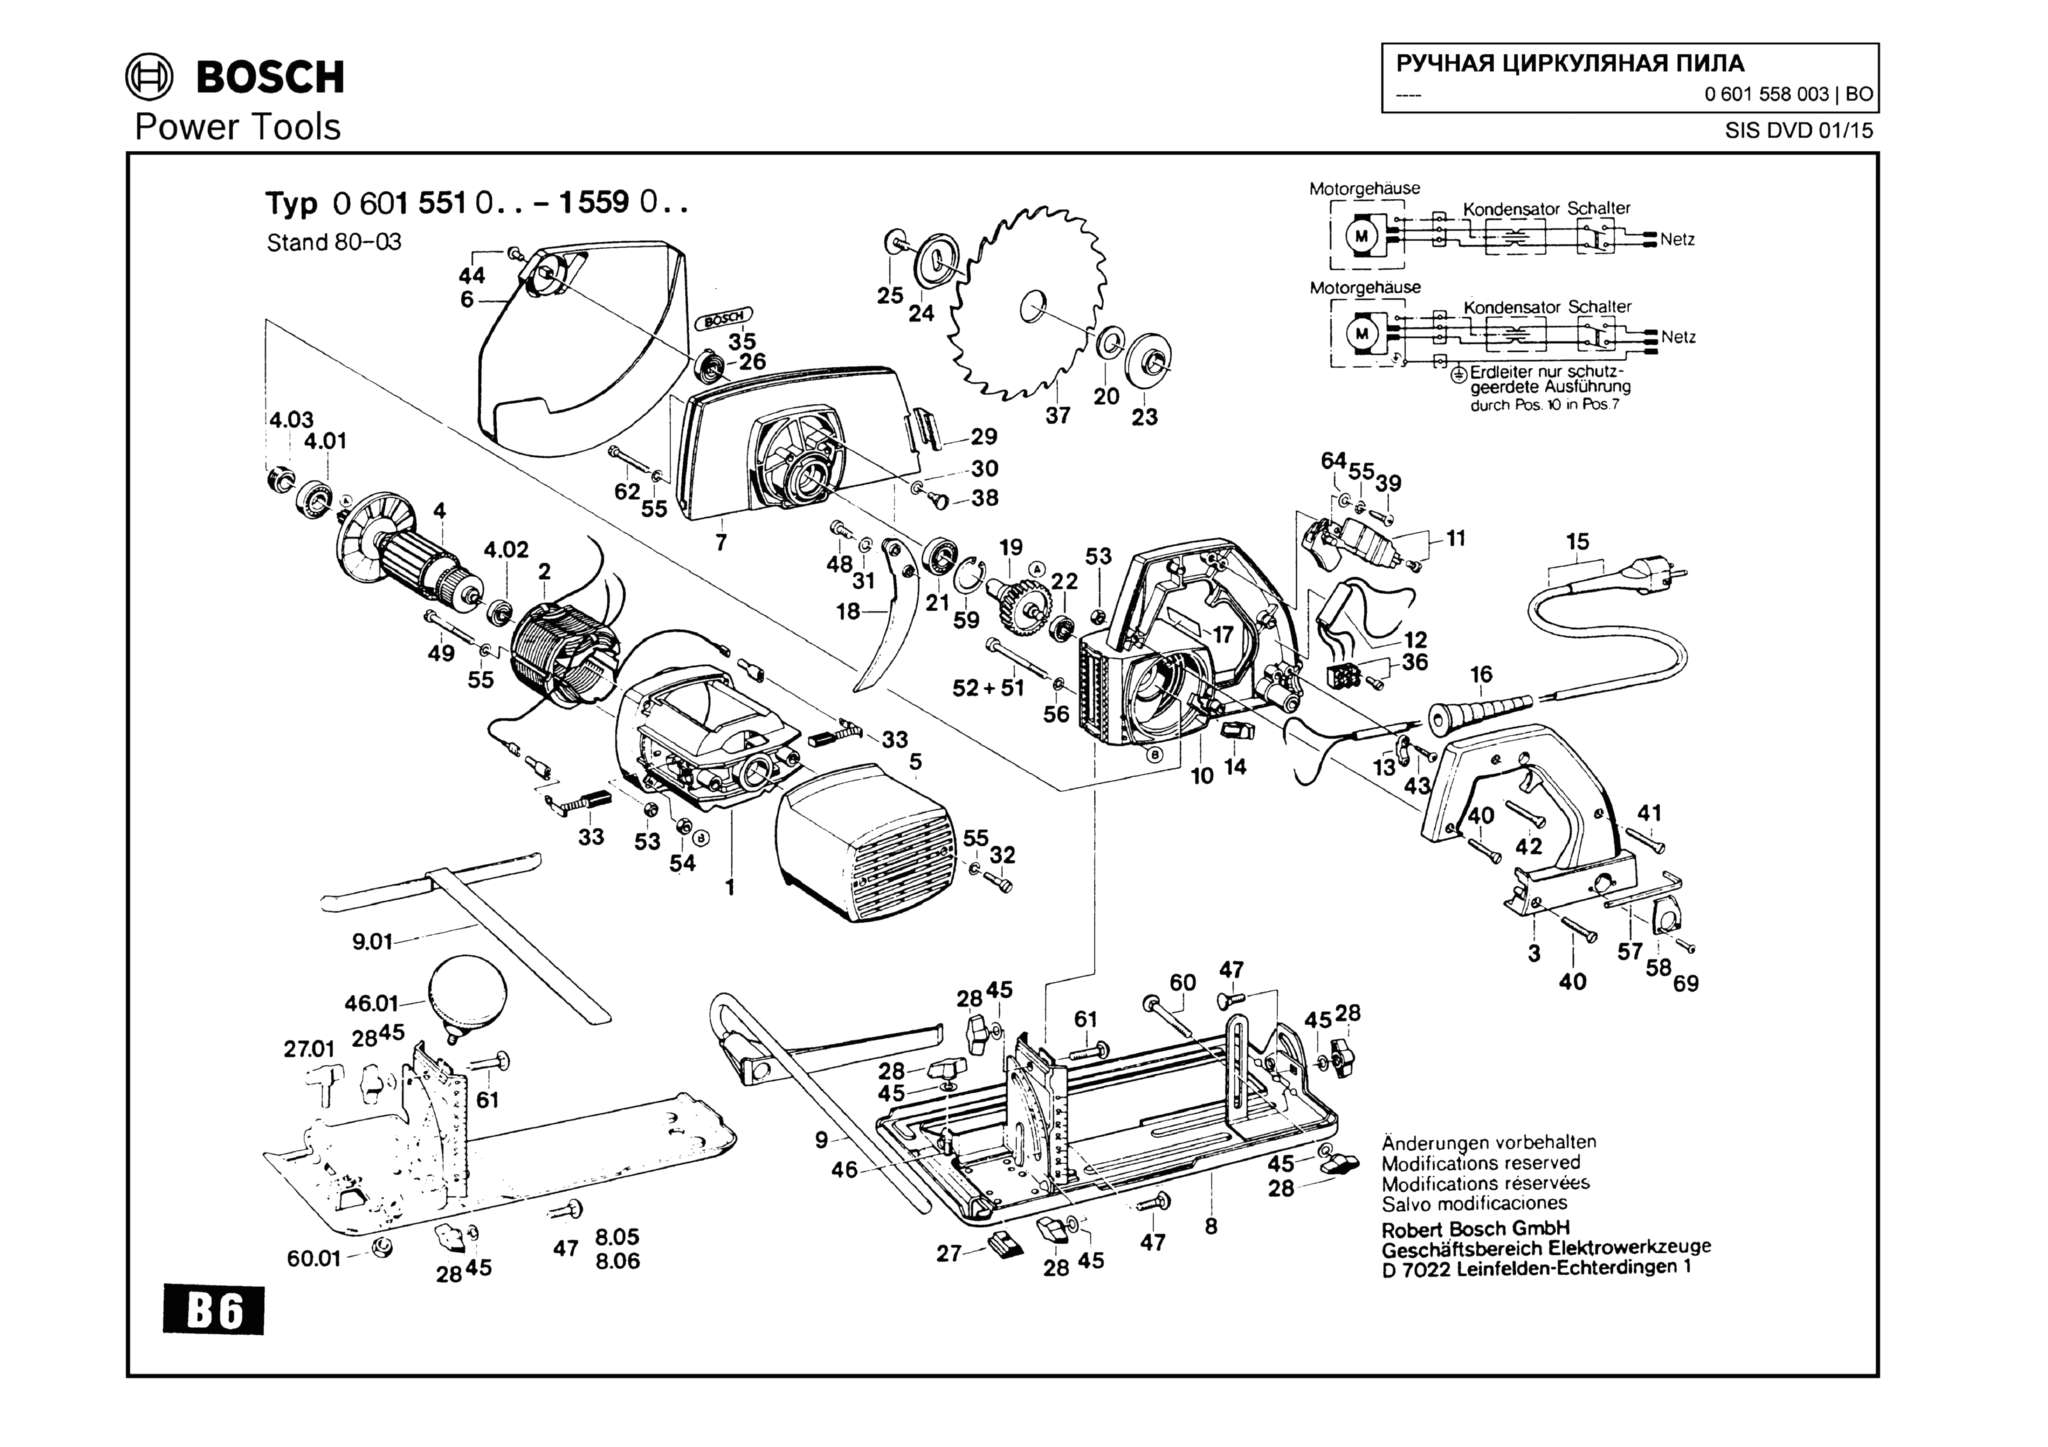 Запчасти, схема и деталировка Bosch (ТИП 0601558003)